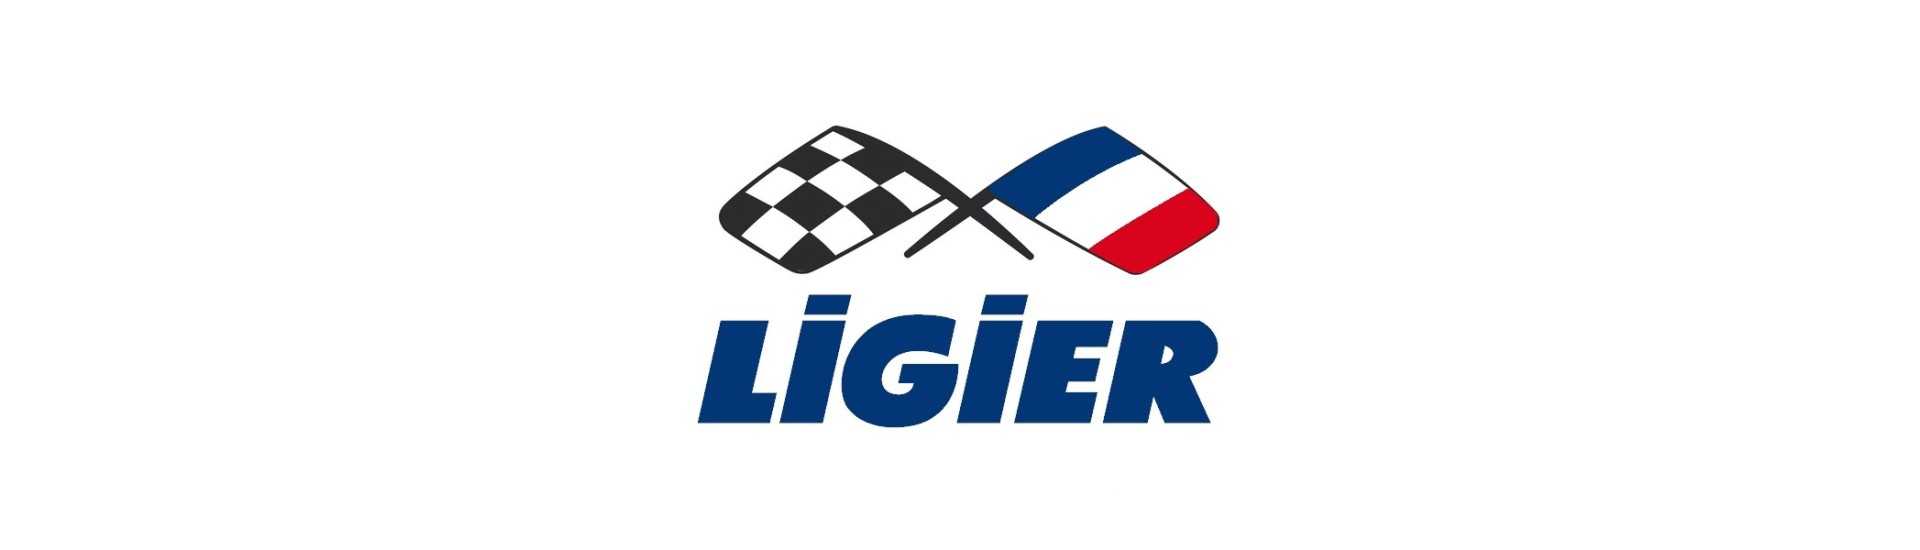 Silent bloc motor la cel mai bun preț pentru mașină fără permis Ligier